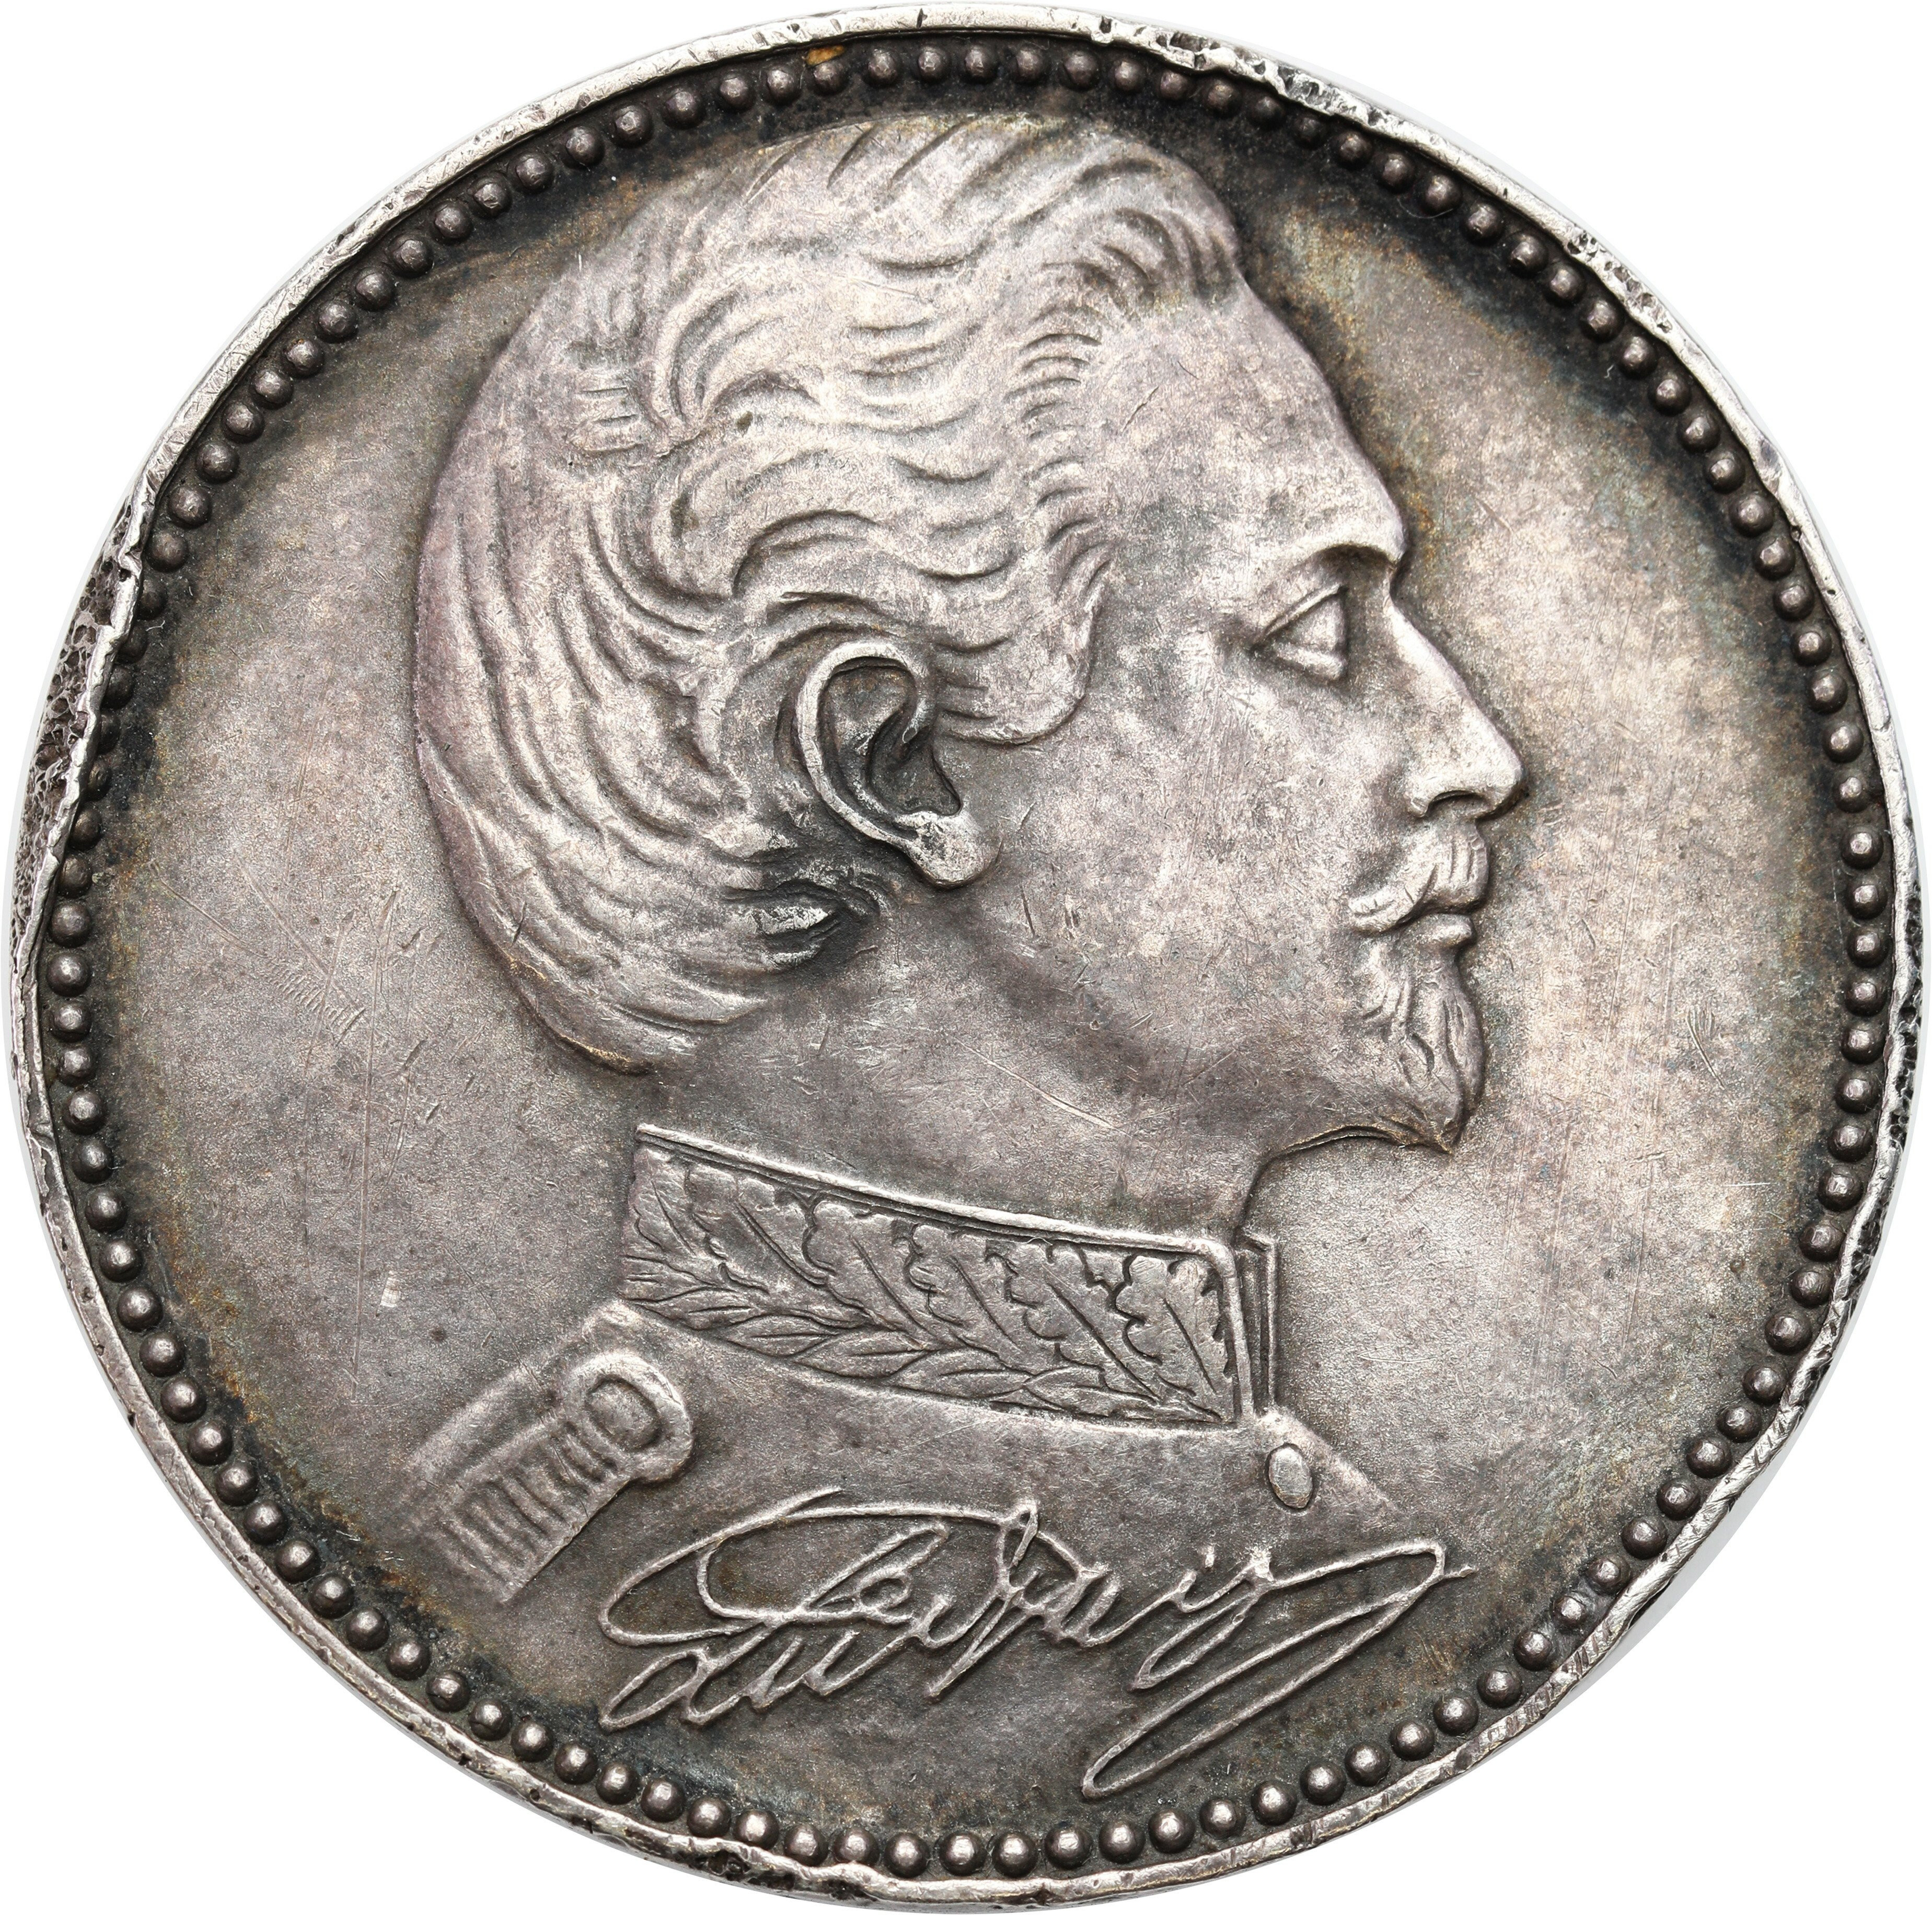 Niemcy, Bayern Ludwig II (1864-1886). Medal bez daty ku czci króla i zamku Neuschwanstein